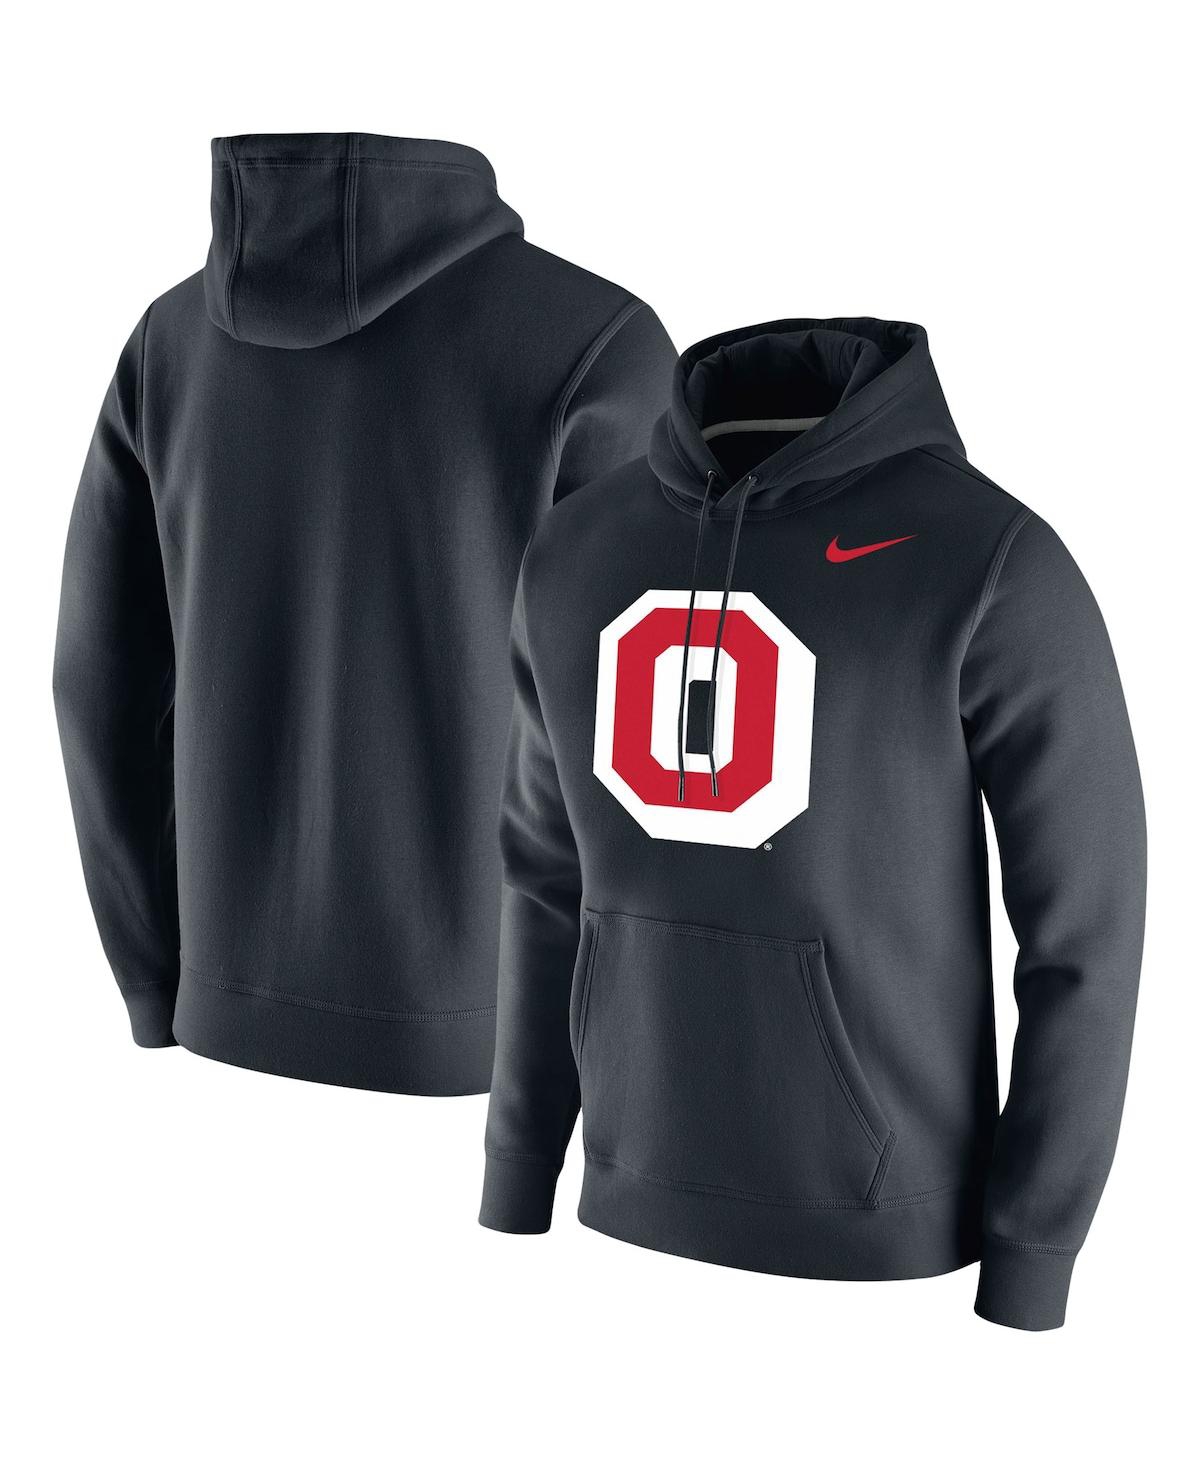 Shop Nike Men's  Black Ohio State Buckeyes Vintage-like School Logo Pullover Hoodie